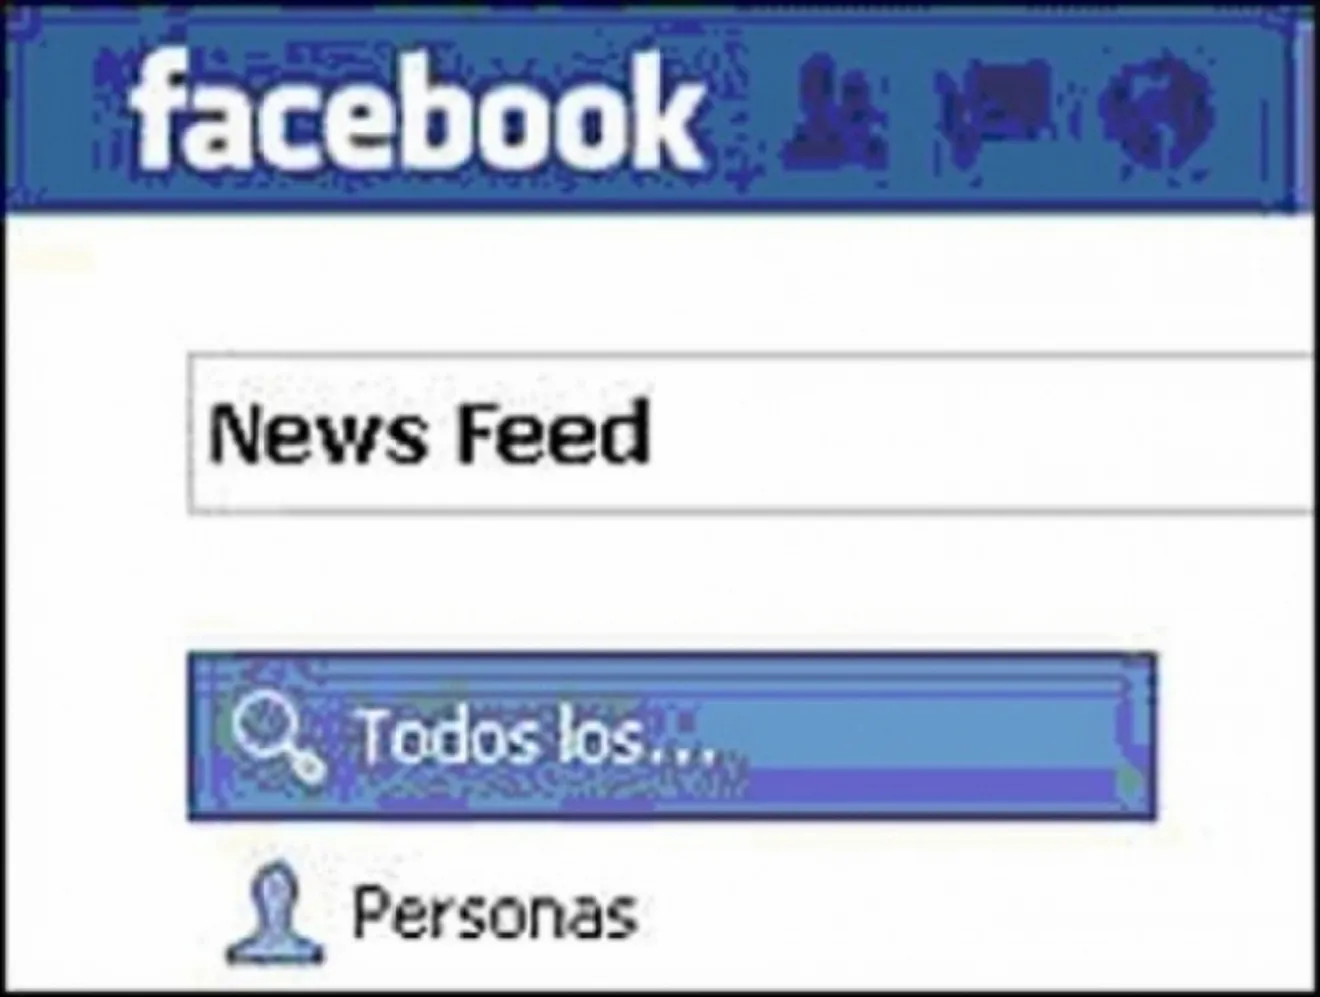 Posche prohibe Facebook en sus instalaciones